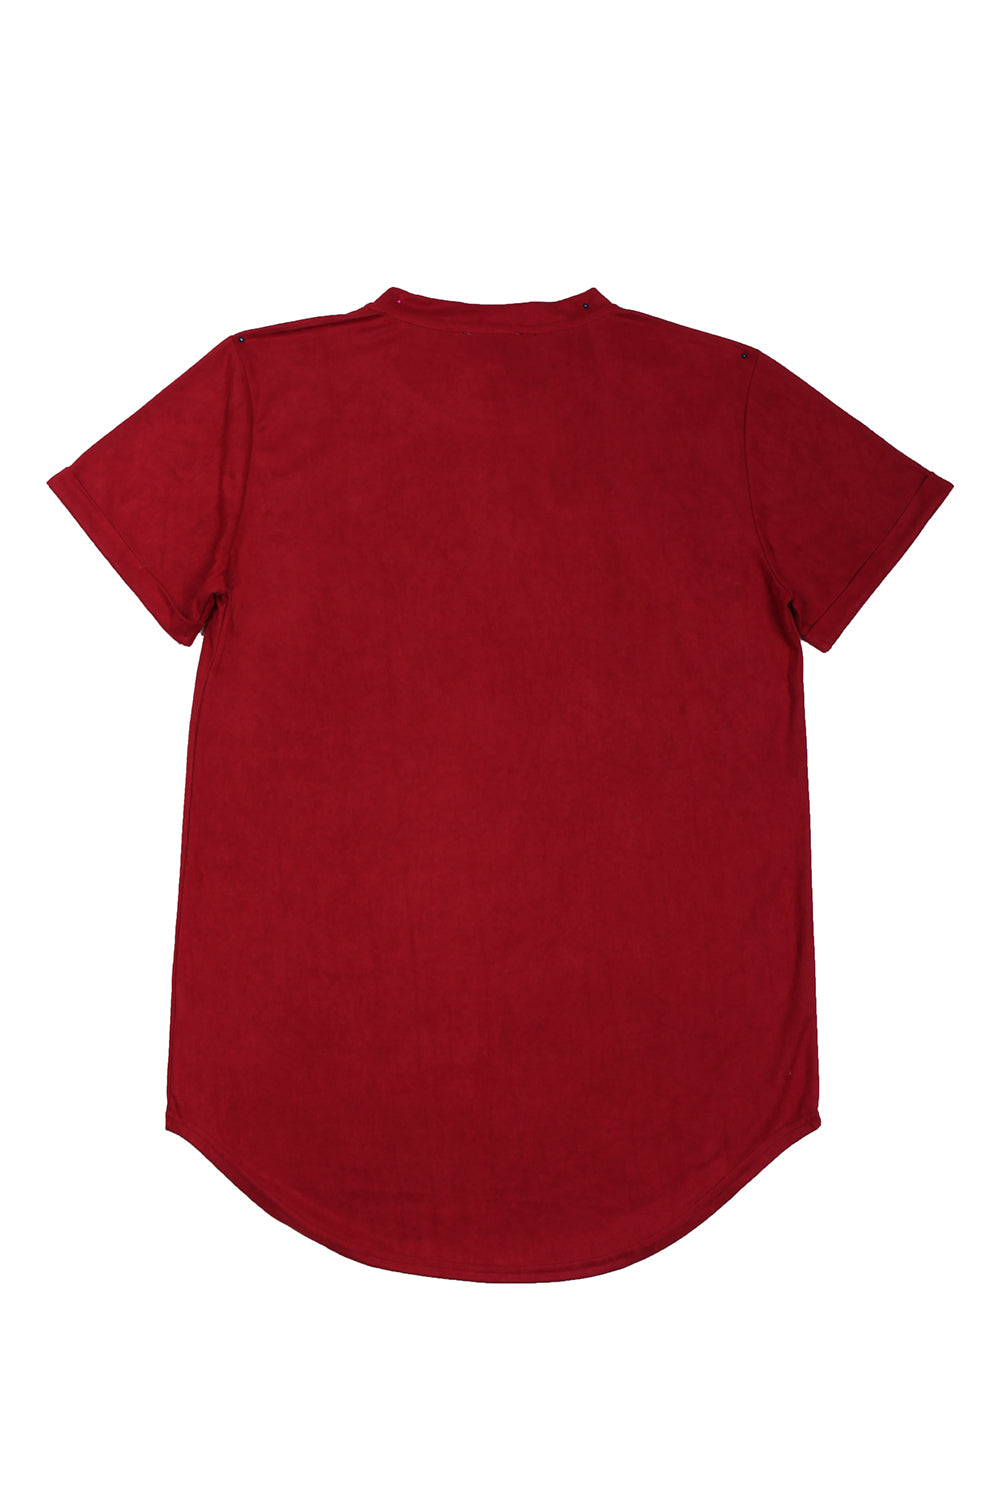 Sixth June - T-shirt suédine oversize bordeaux 1925V